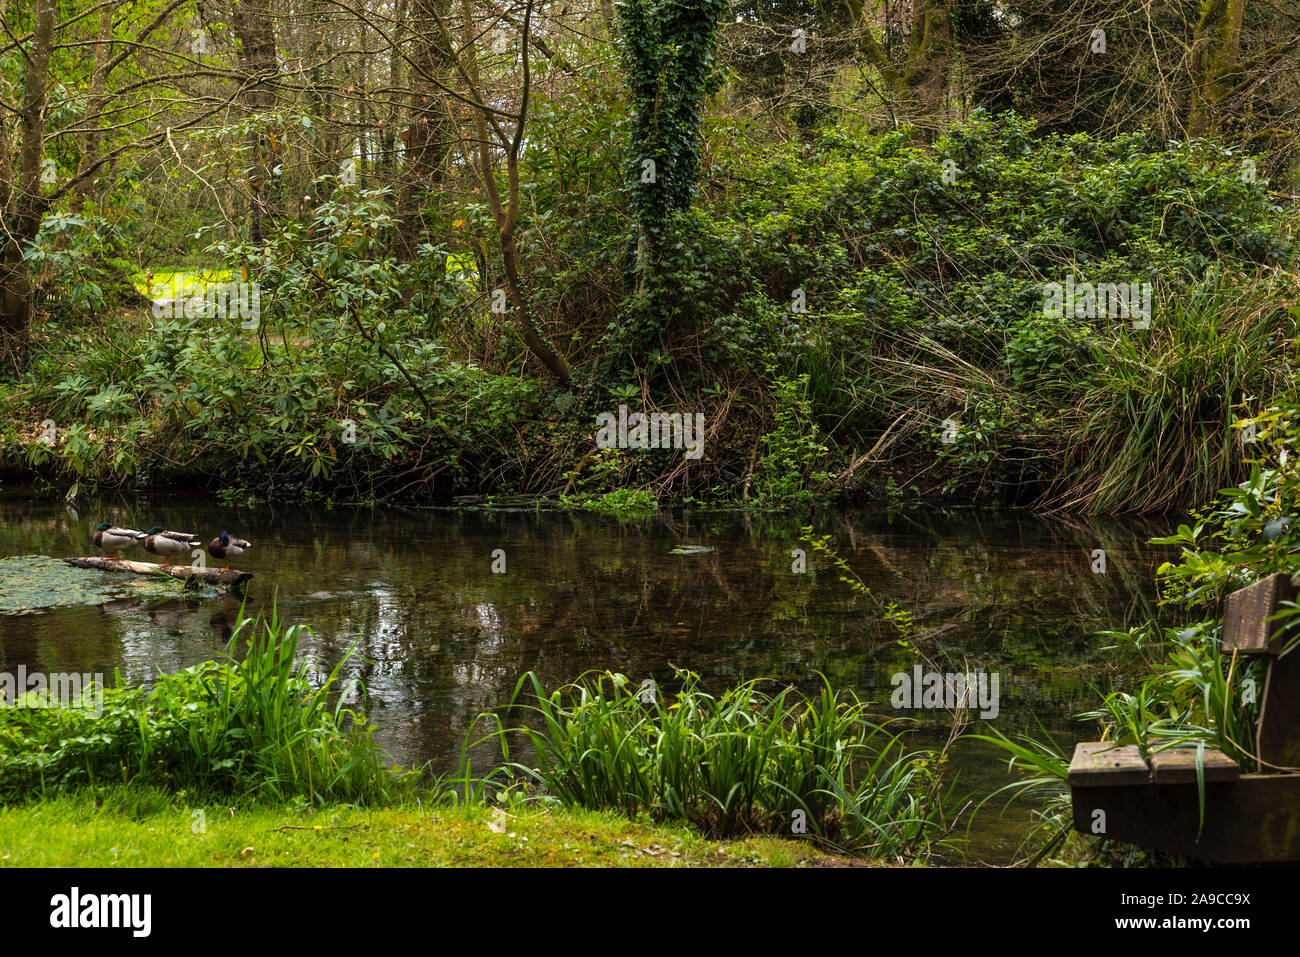 tres patos reales durmiendo en un tronco en medio de un río, juntos en una línea, banco del parque cerca, rodeado de un exuberante follaje verde Foto de stock